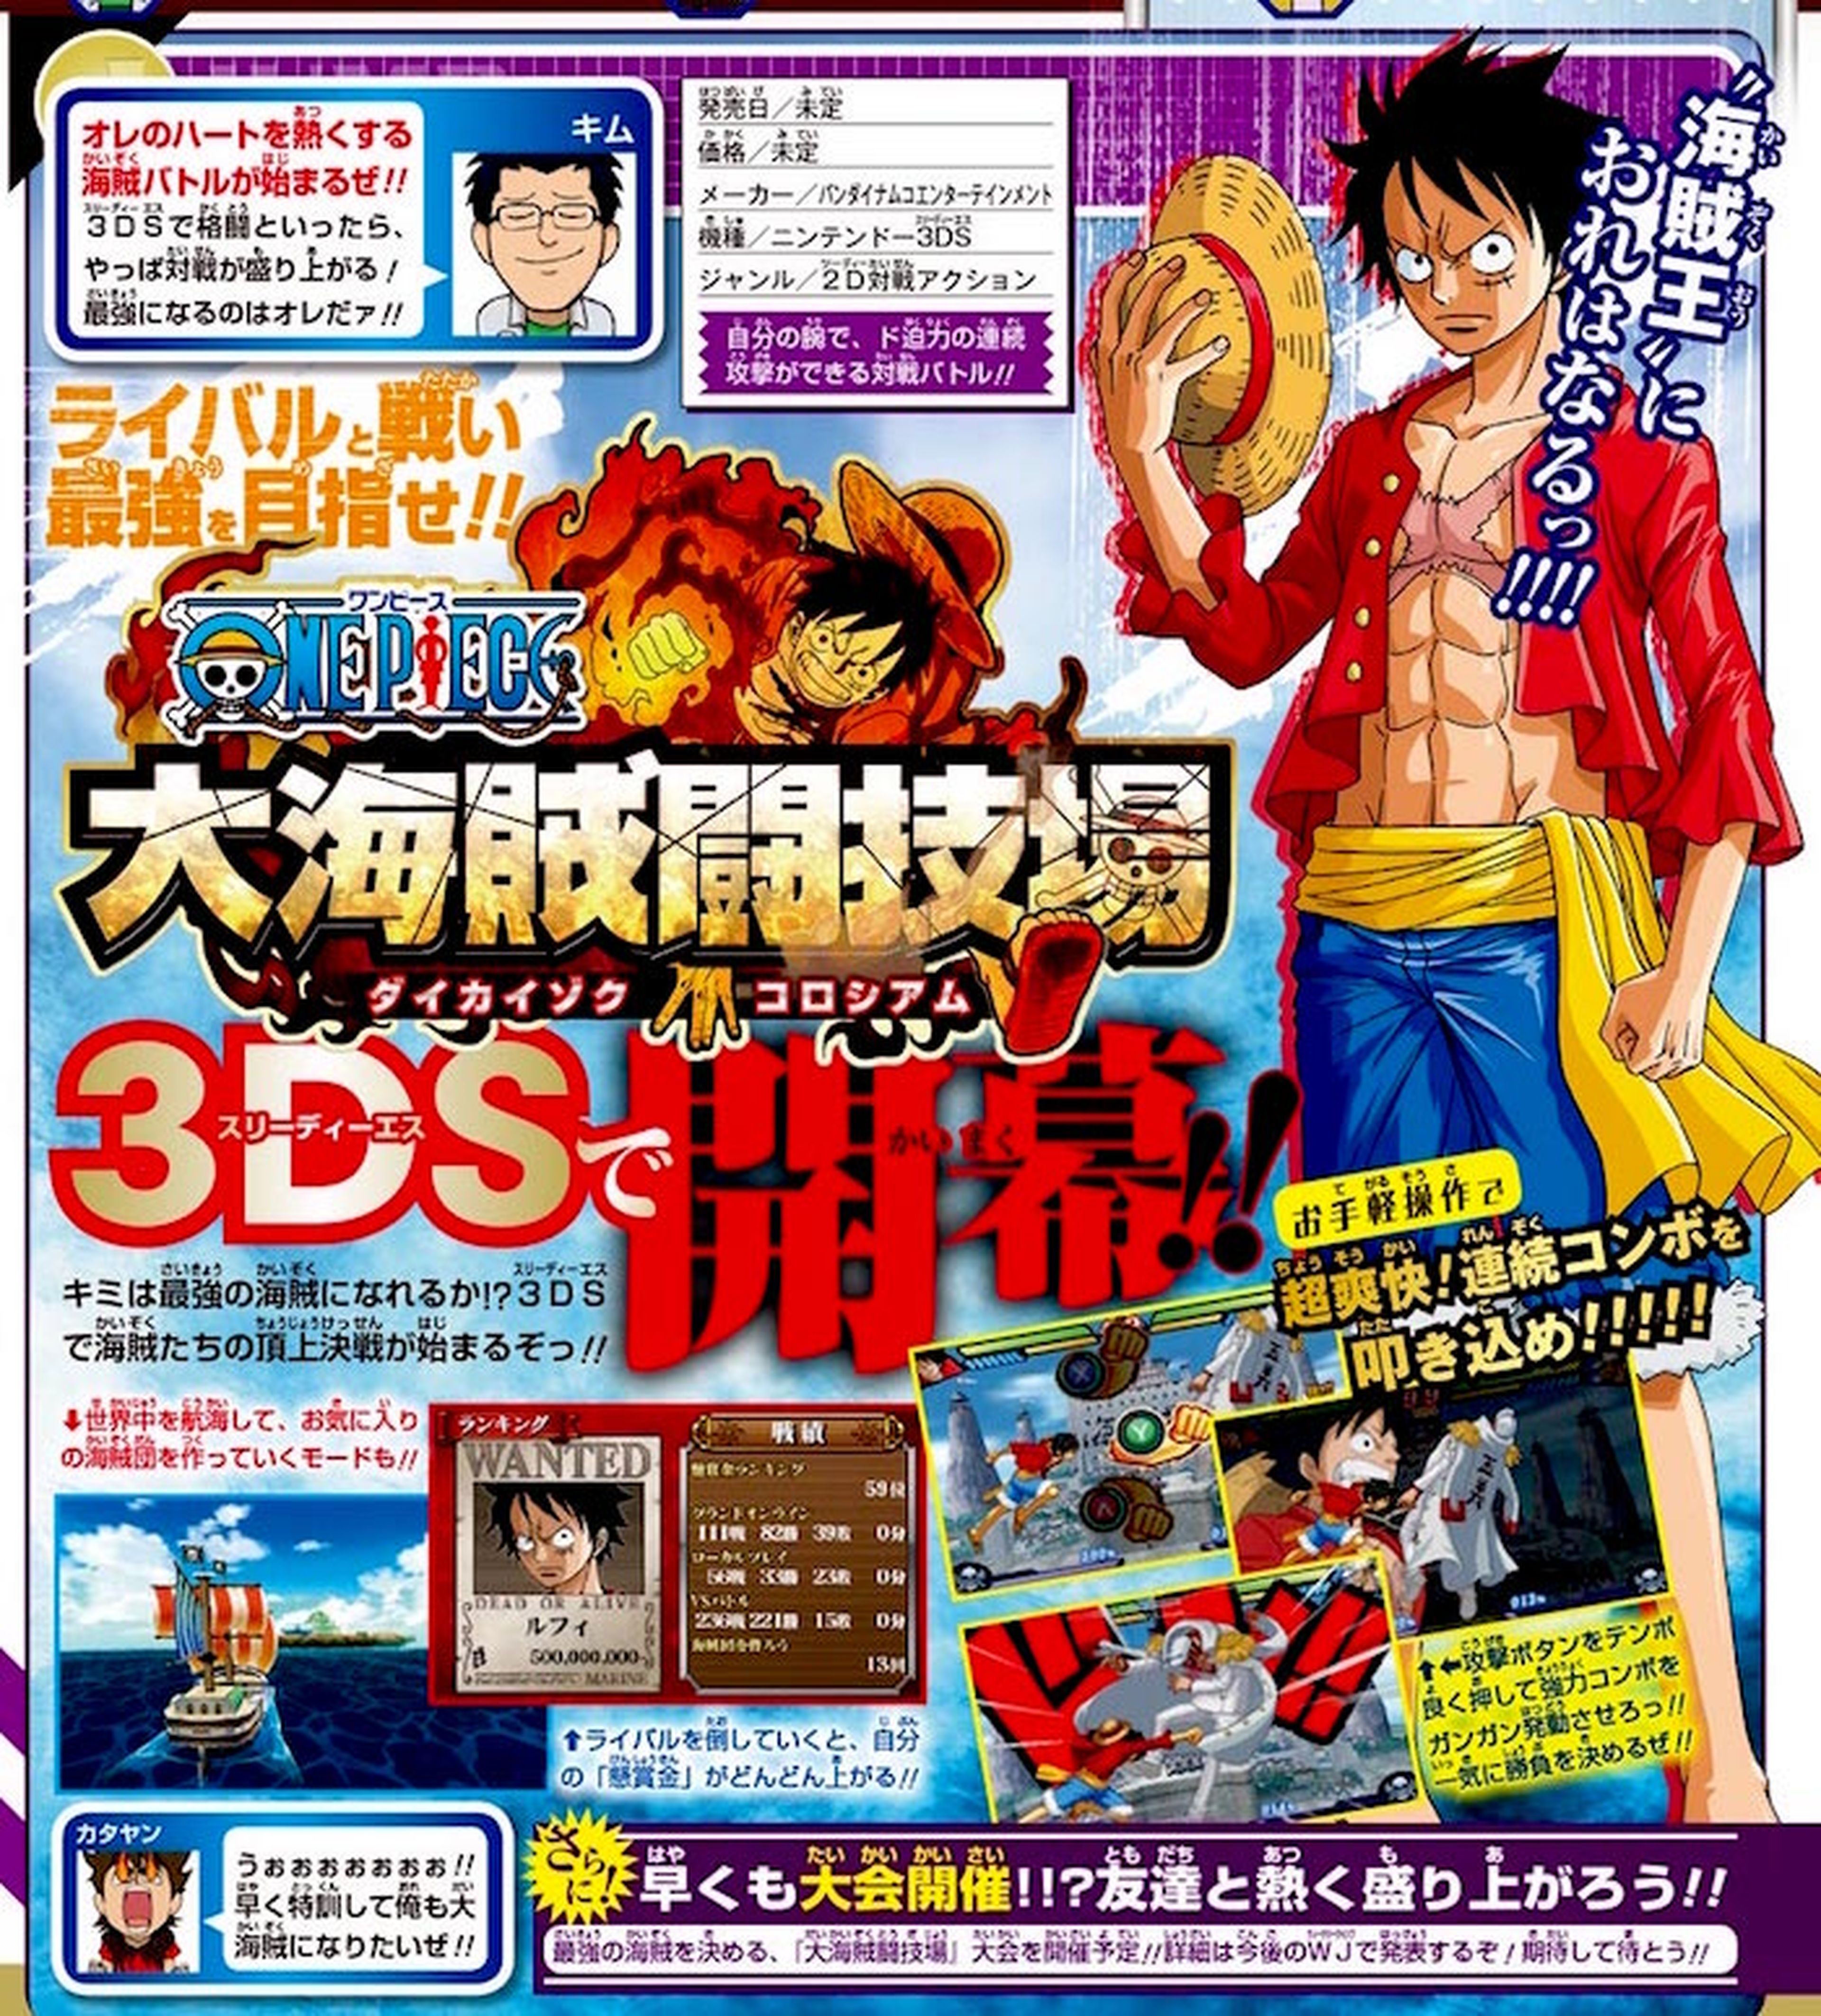 One Piece Great Pirate Colosseum para 3DS anunciado